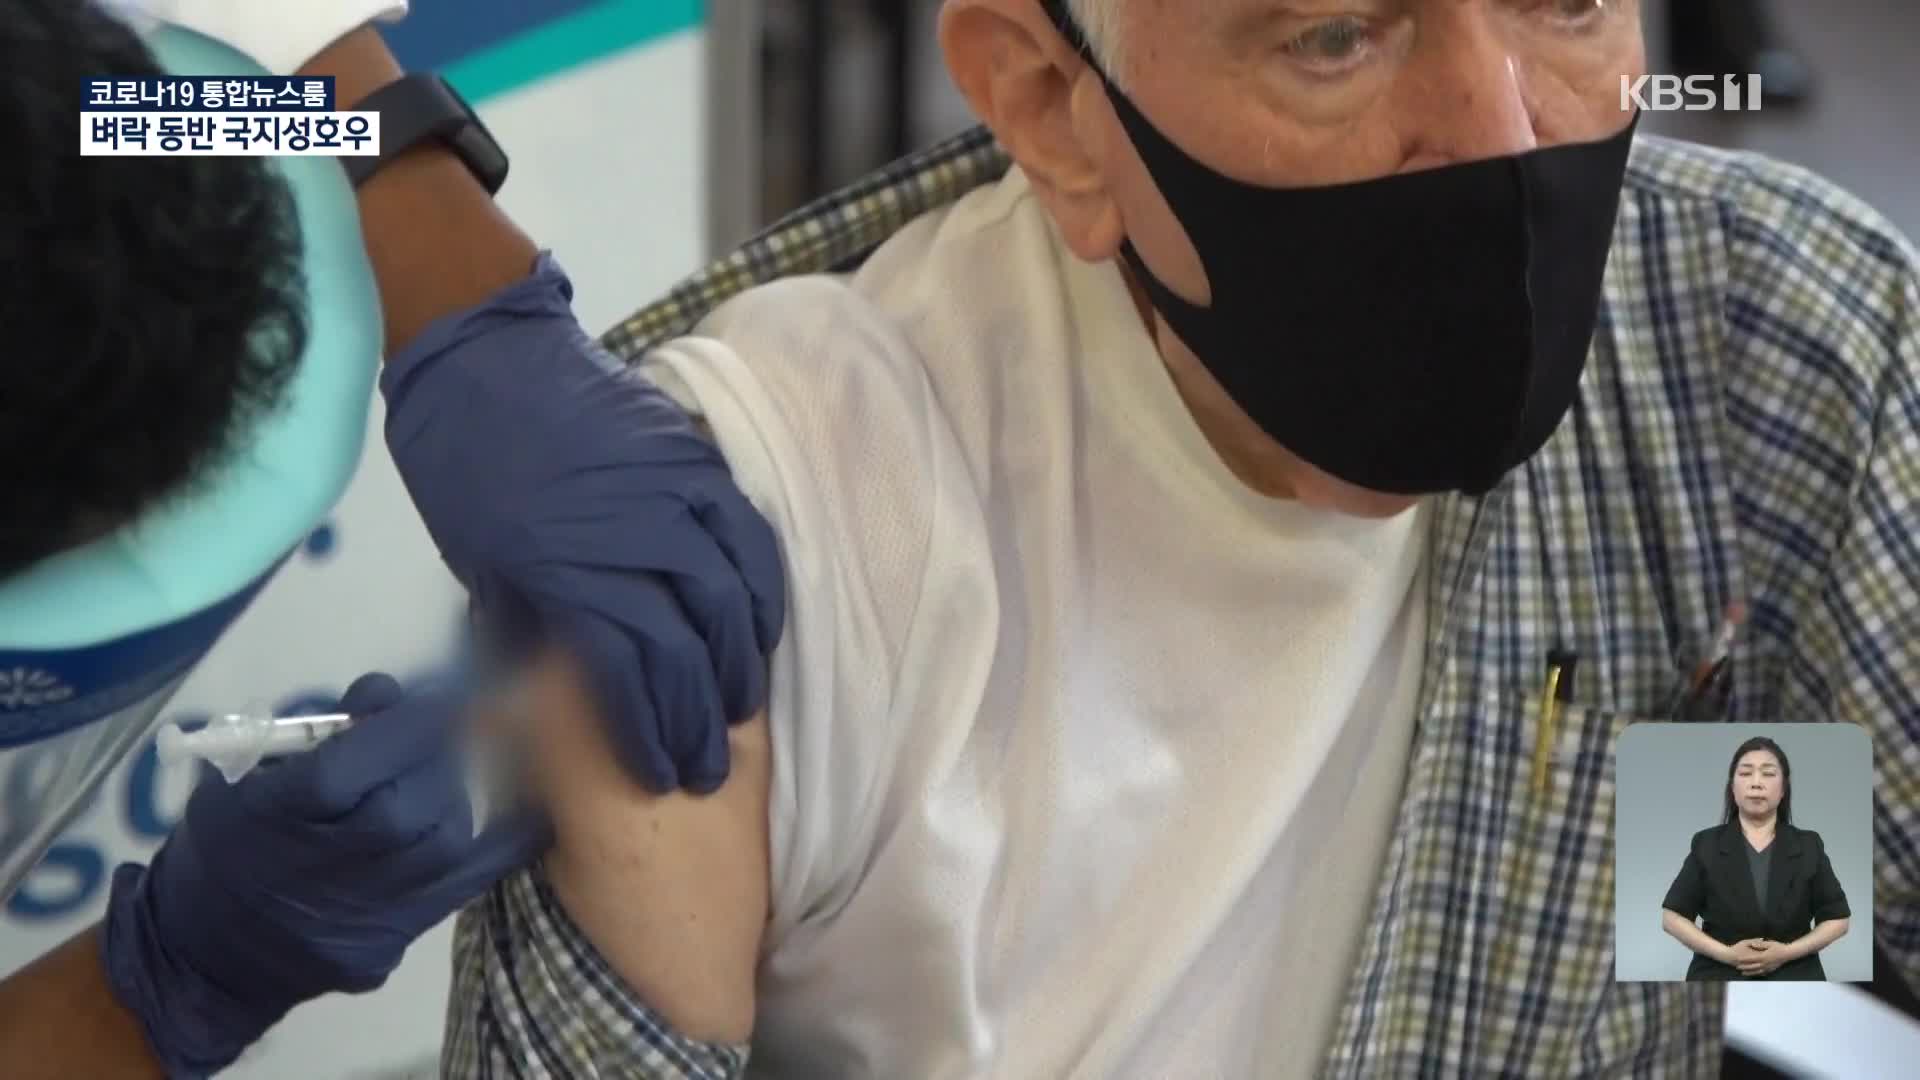 델타 변이 공포에 선진국들 속속 ‘추가접종’…WHO “백신 나눠야”